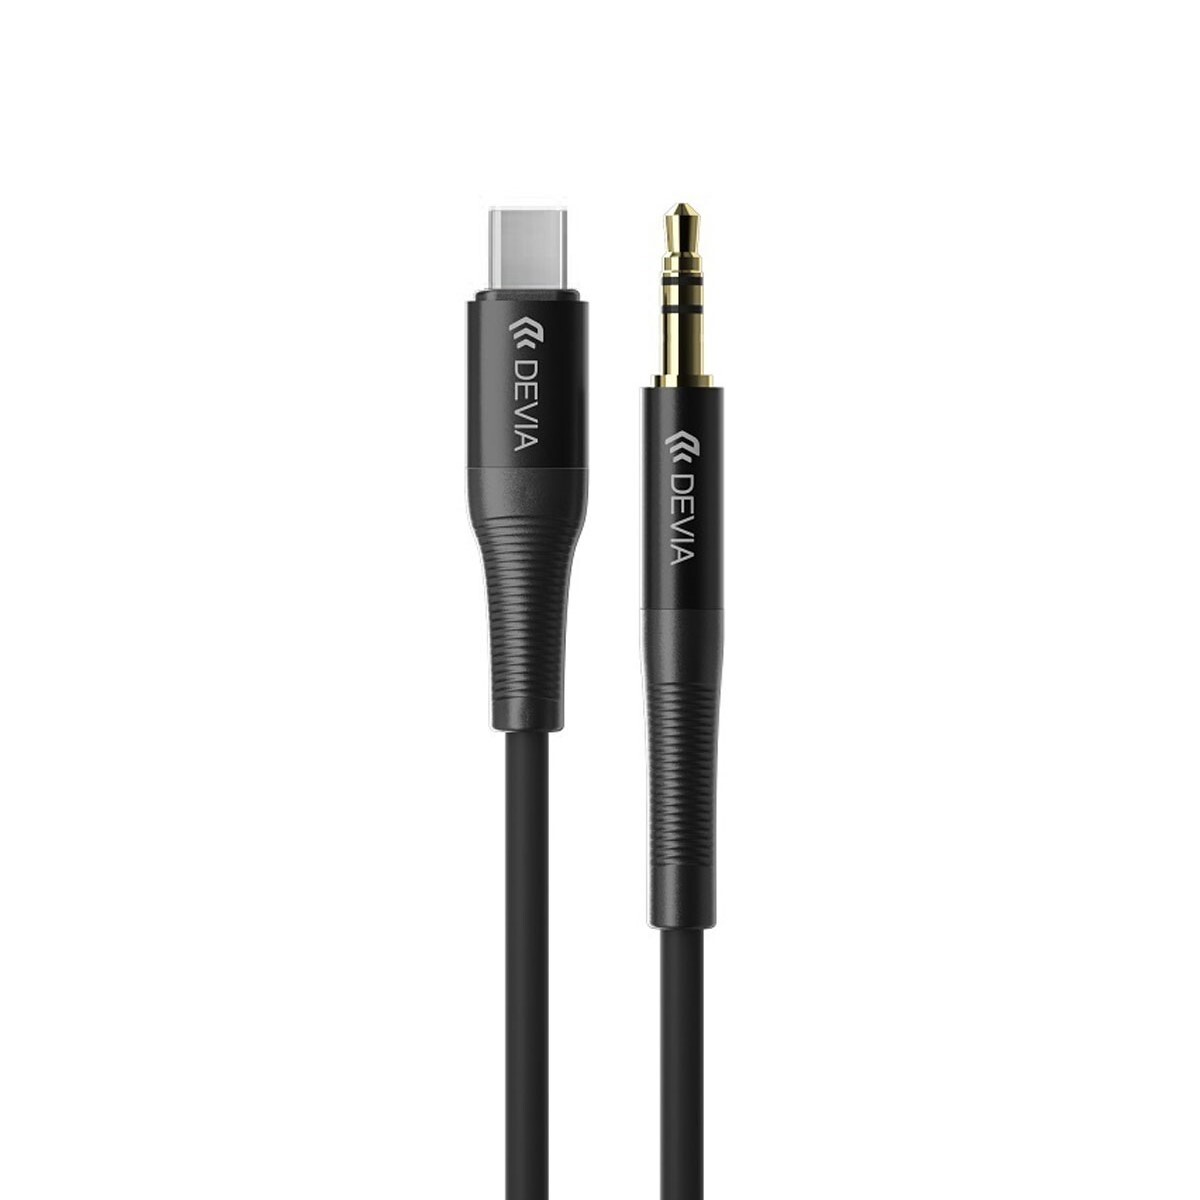 Cable de audio usb tipo-c a 3.5mm devia ipure series Black